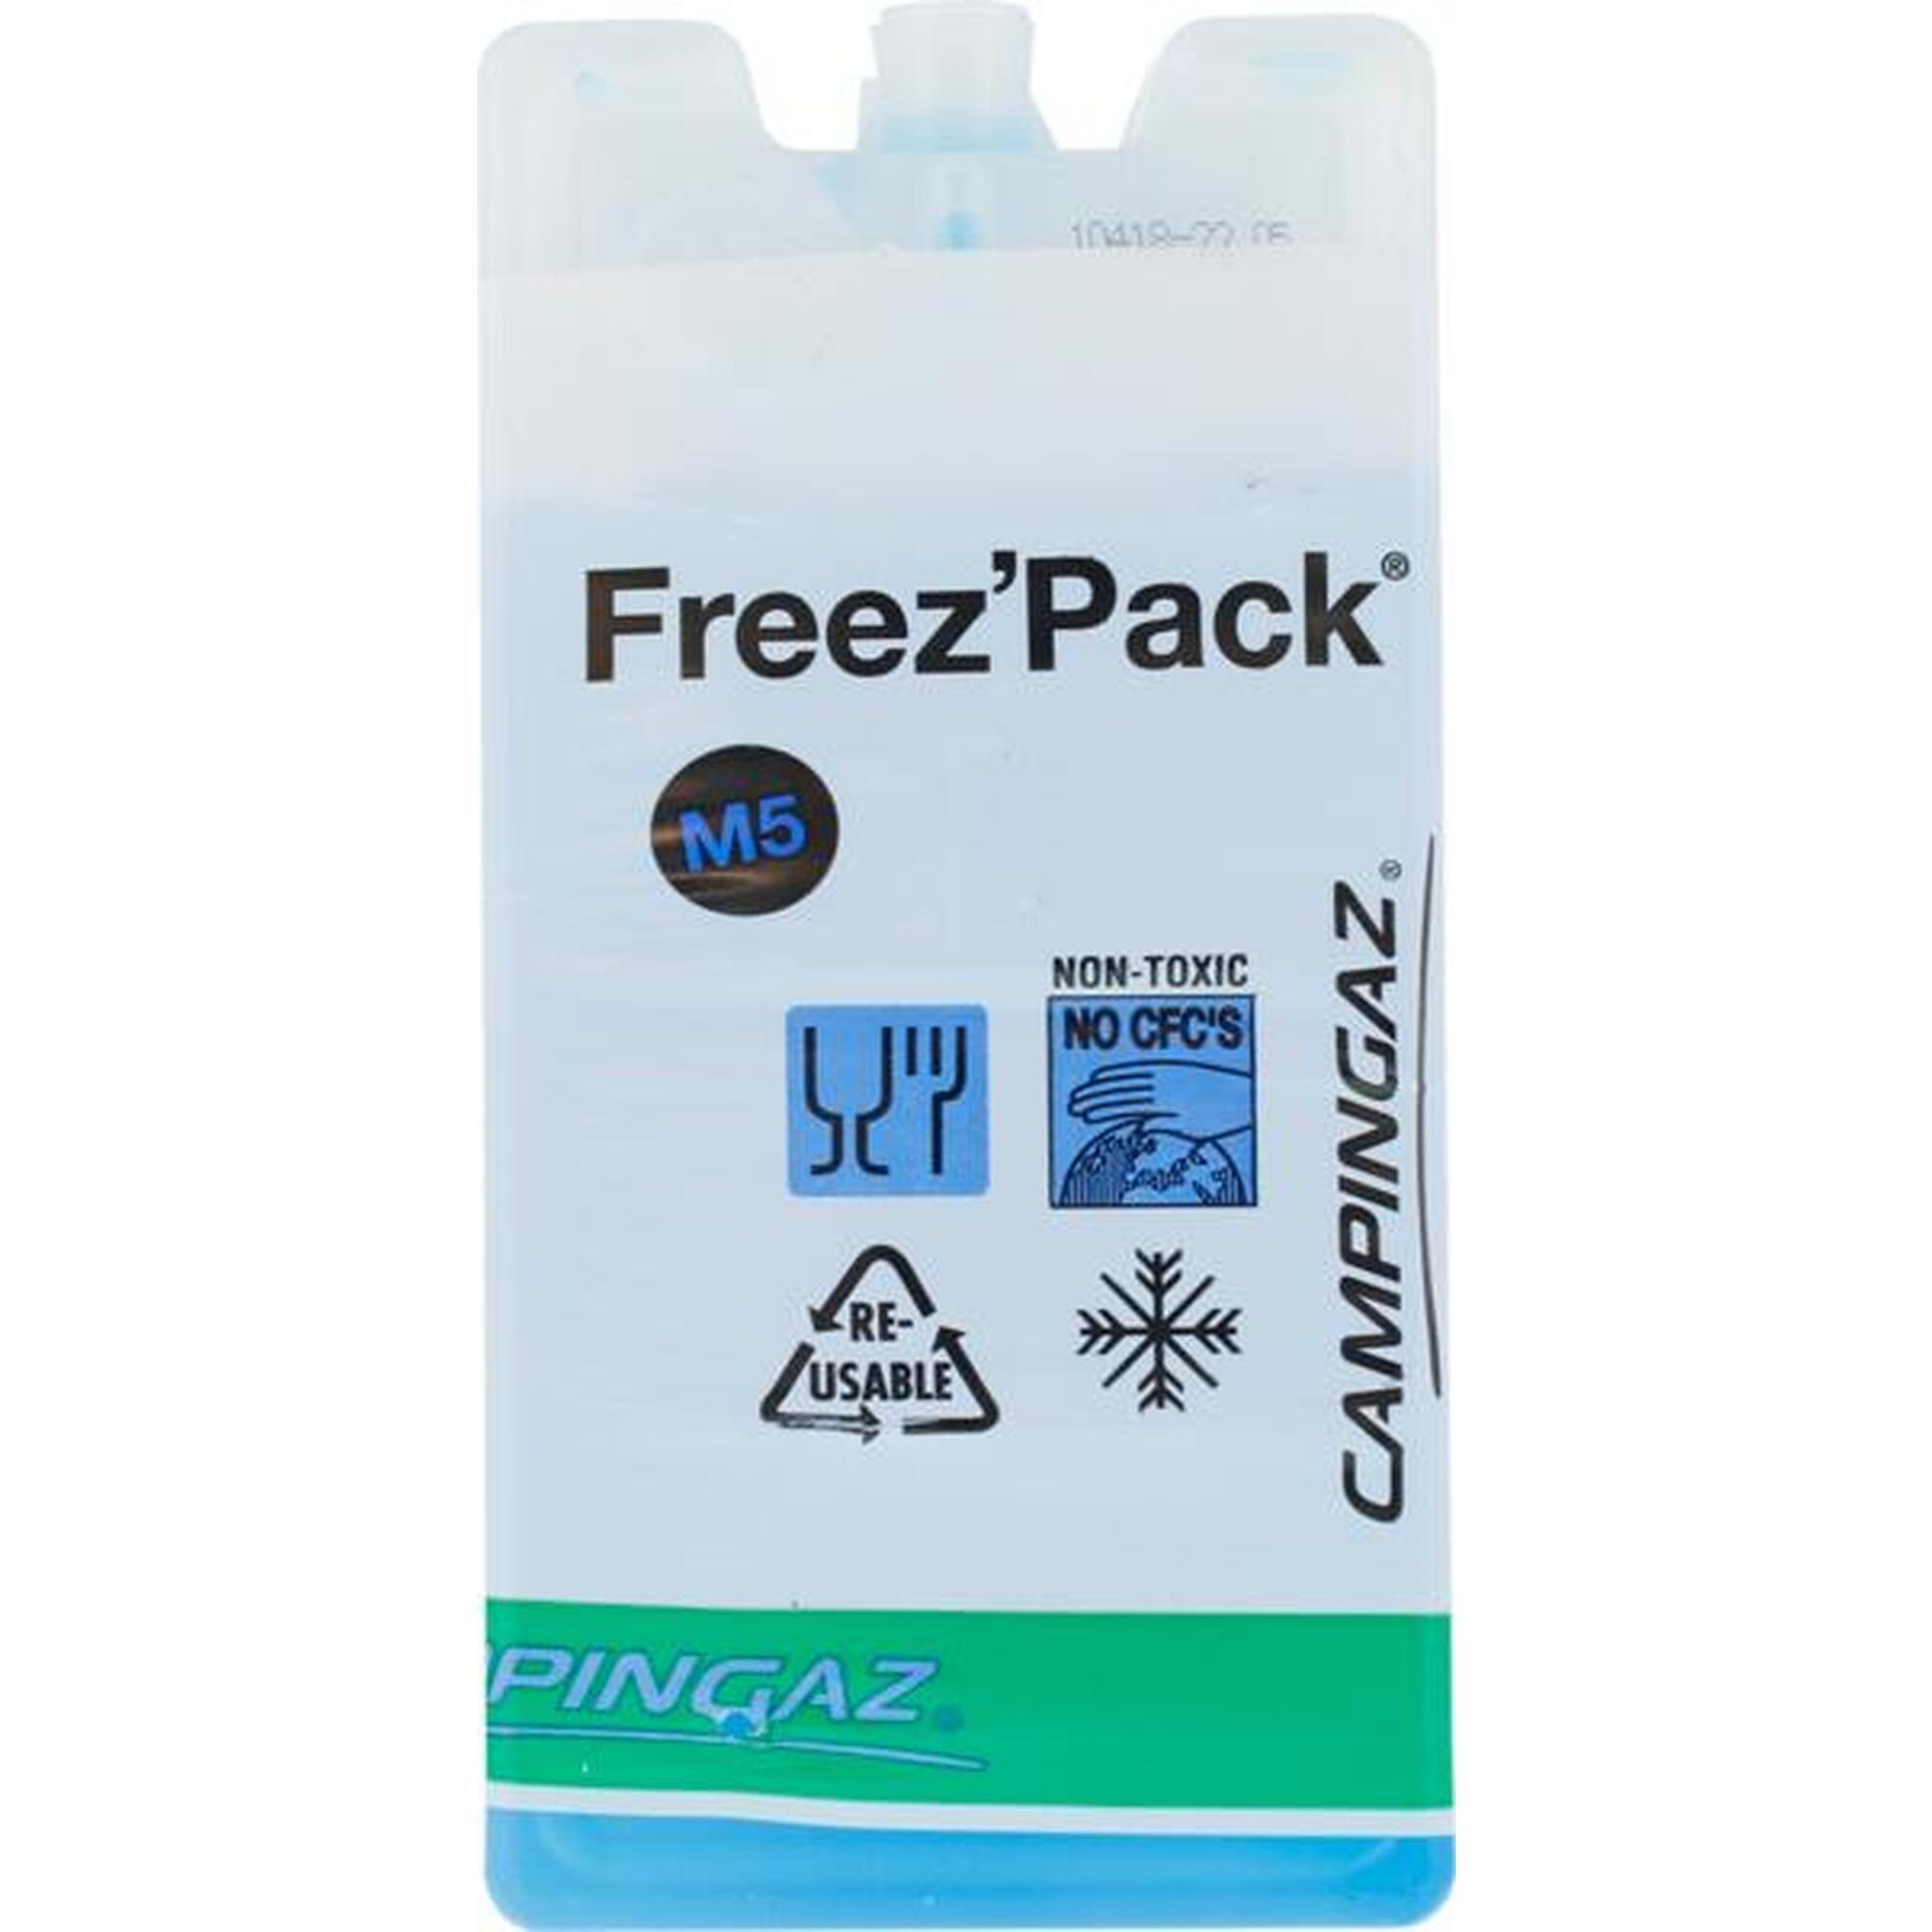 Campingaz Freez Pack M5 inserto refrigerador 2uds.